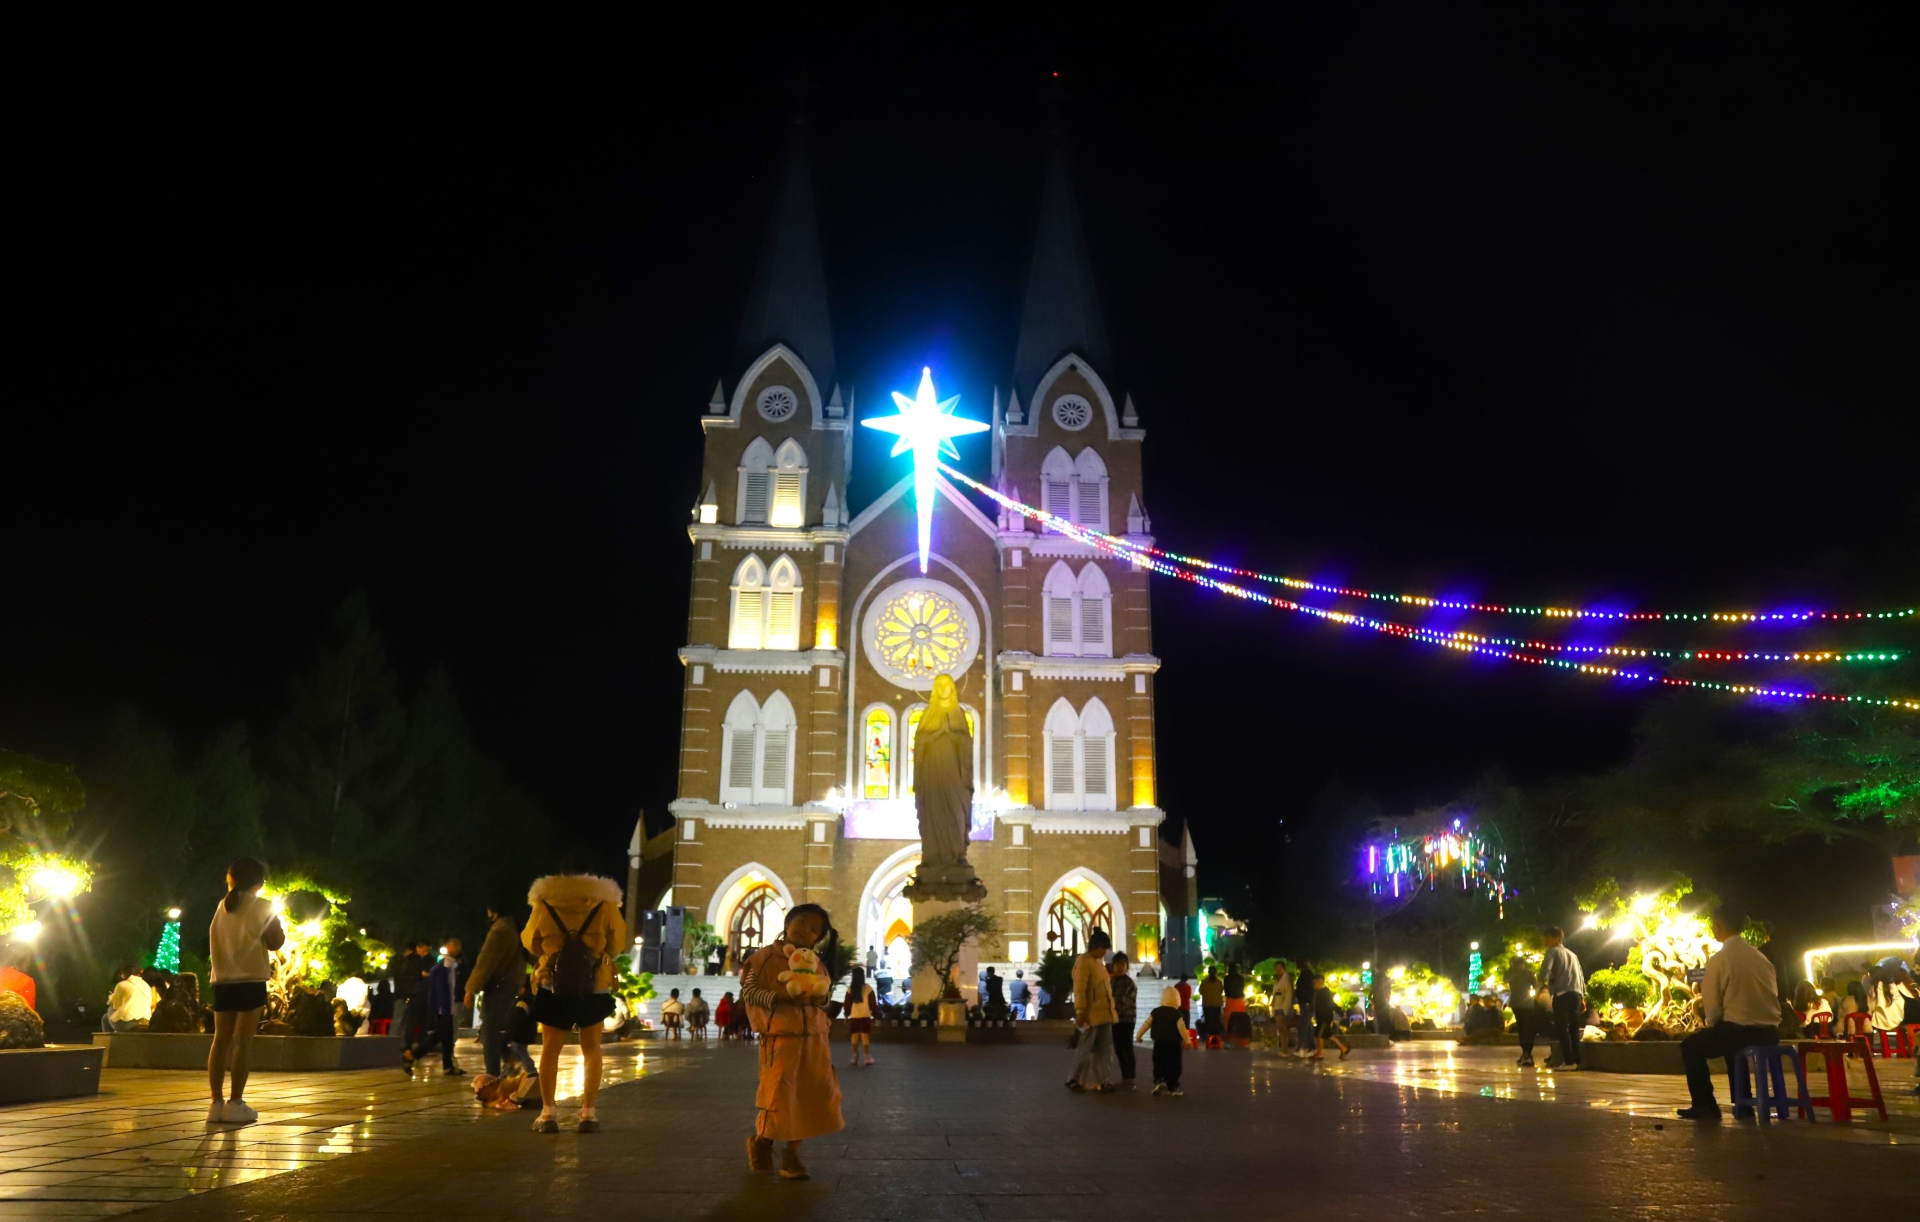 Giáo xứ Thánh Mẫu (phường Lộc Phát) đẹp lung linh, lộng lẫy trong ánh điện đêm Noel